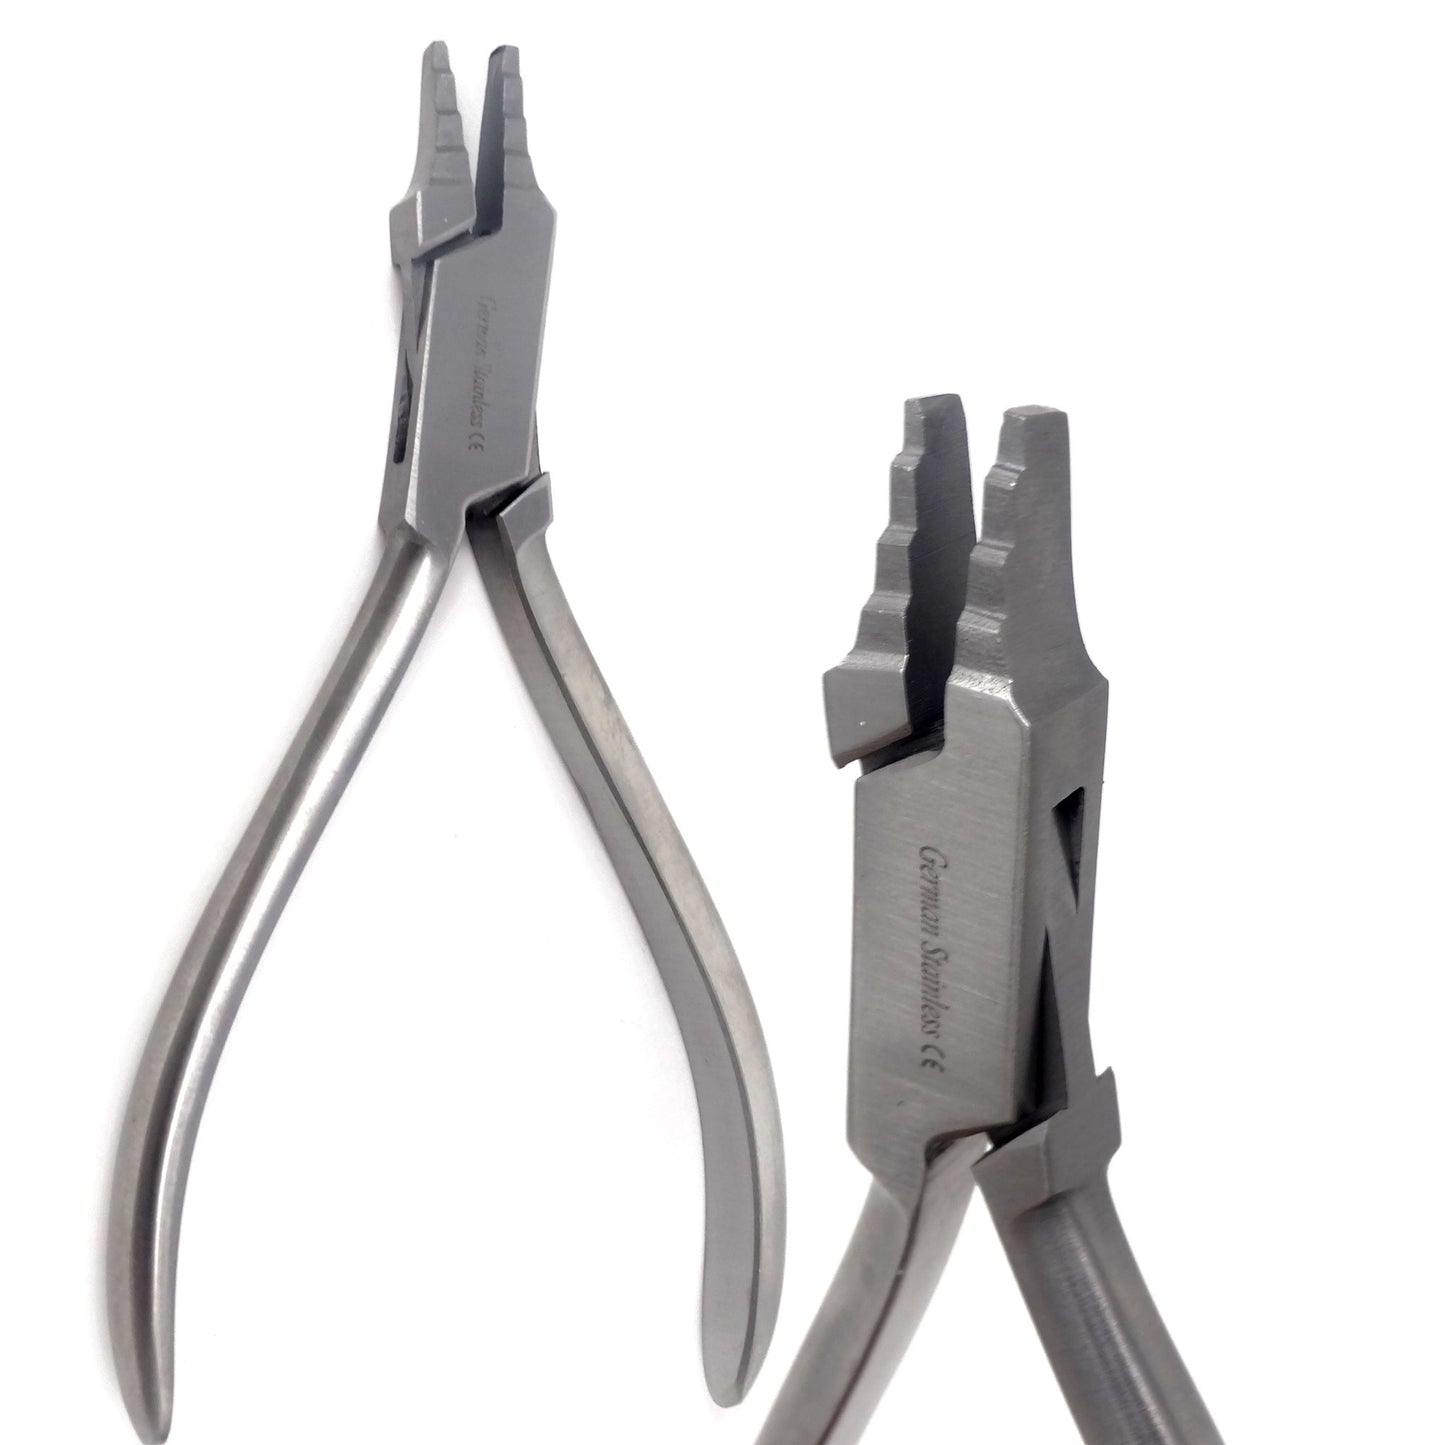 Orthodontic Nance Loop Pliers Stainless Steel Loop Forming Dental Instrument